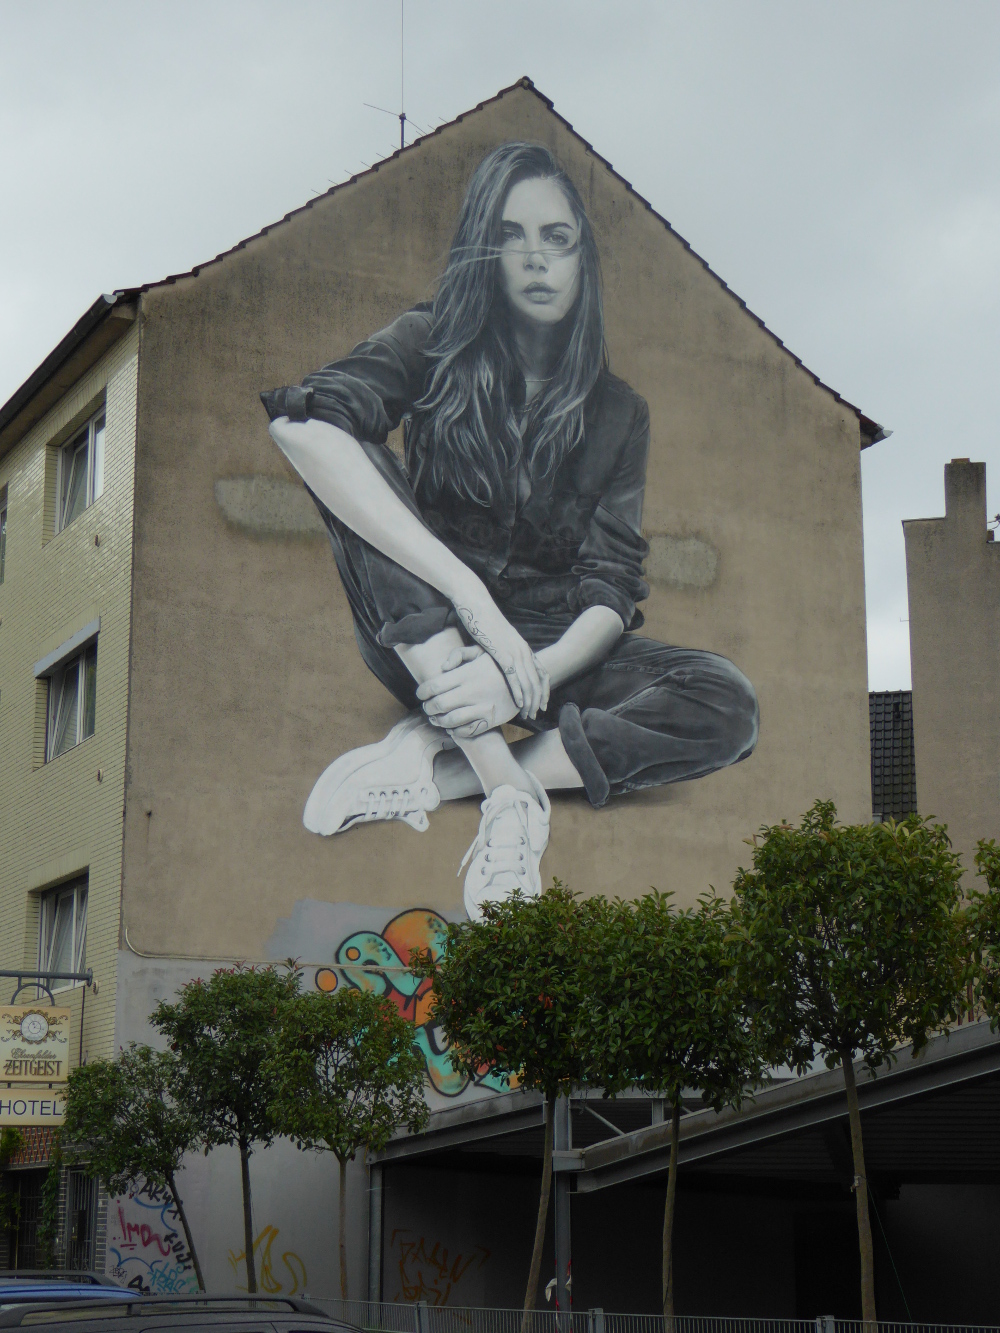 Übergroßes Wandgemälde einer jungen Frau im Fotorealistischen Style ebenfalls in Köln Ehrenfeld - dem El Dorado für alle Streetart-Motiv-Jäger